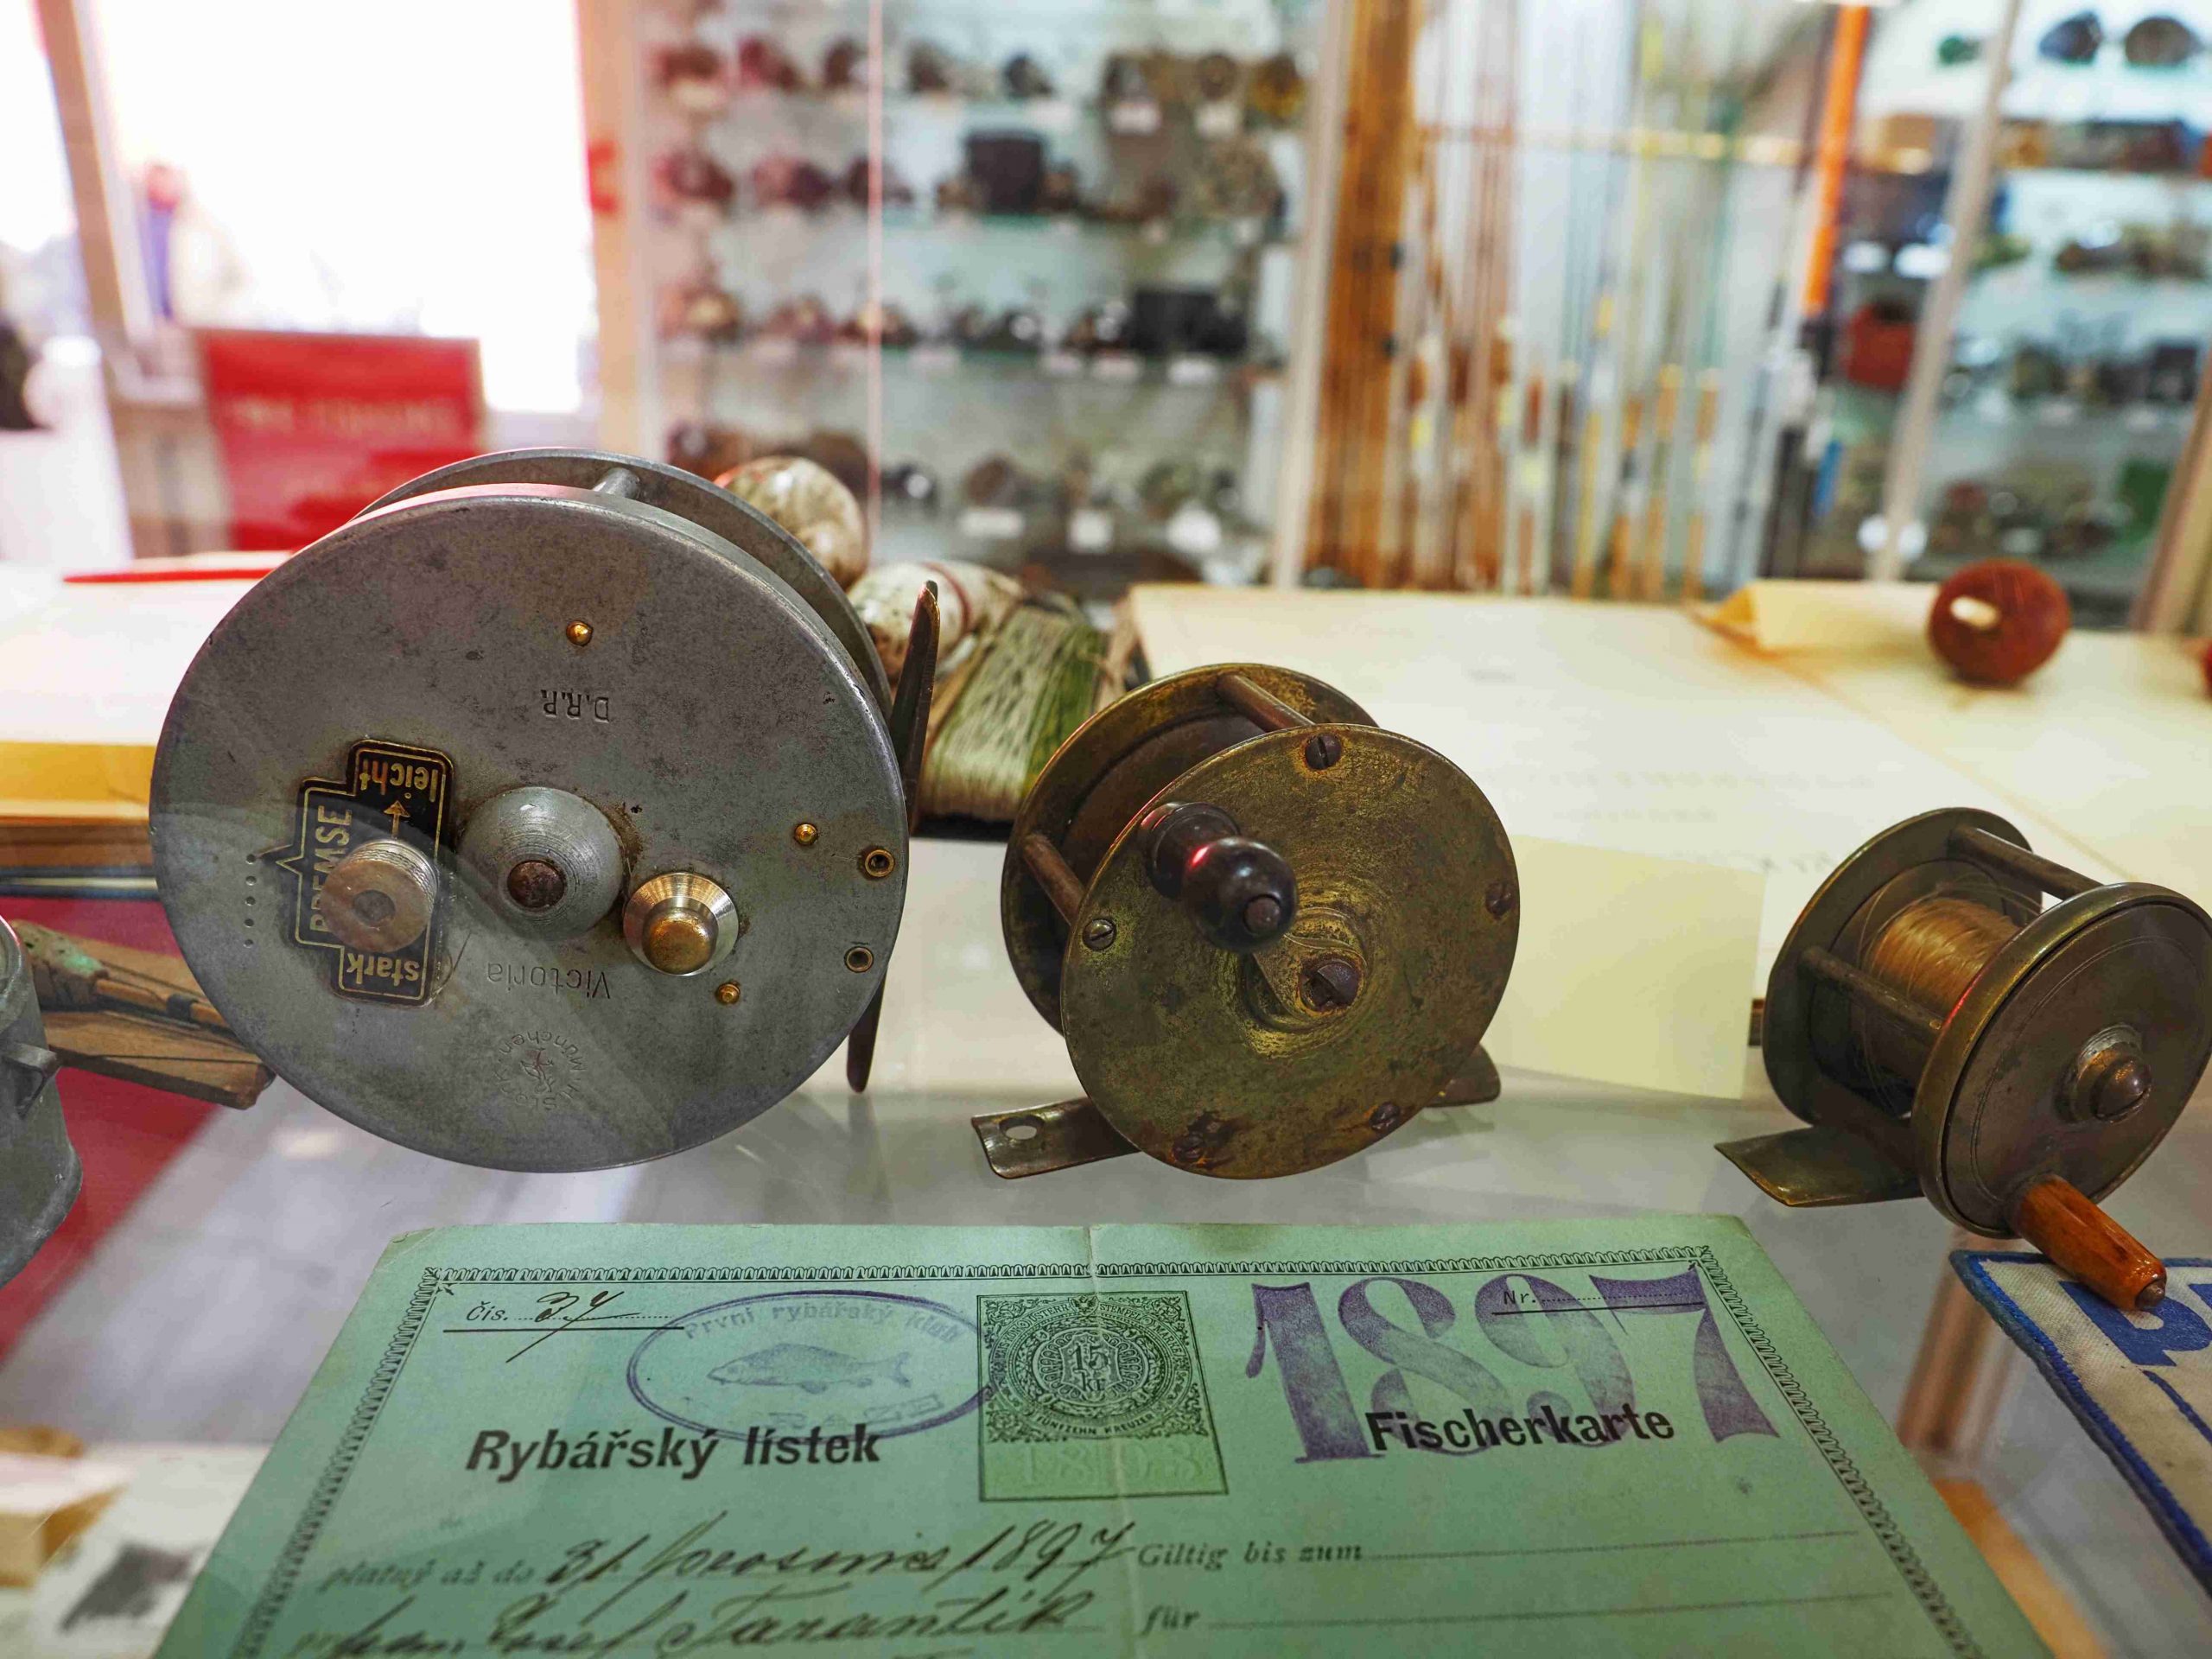 výstava historického rybářského vybavení v Chotilsku